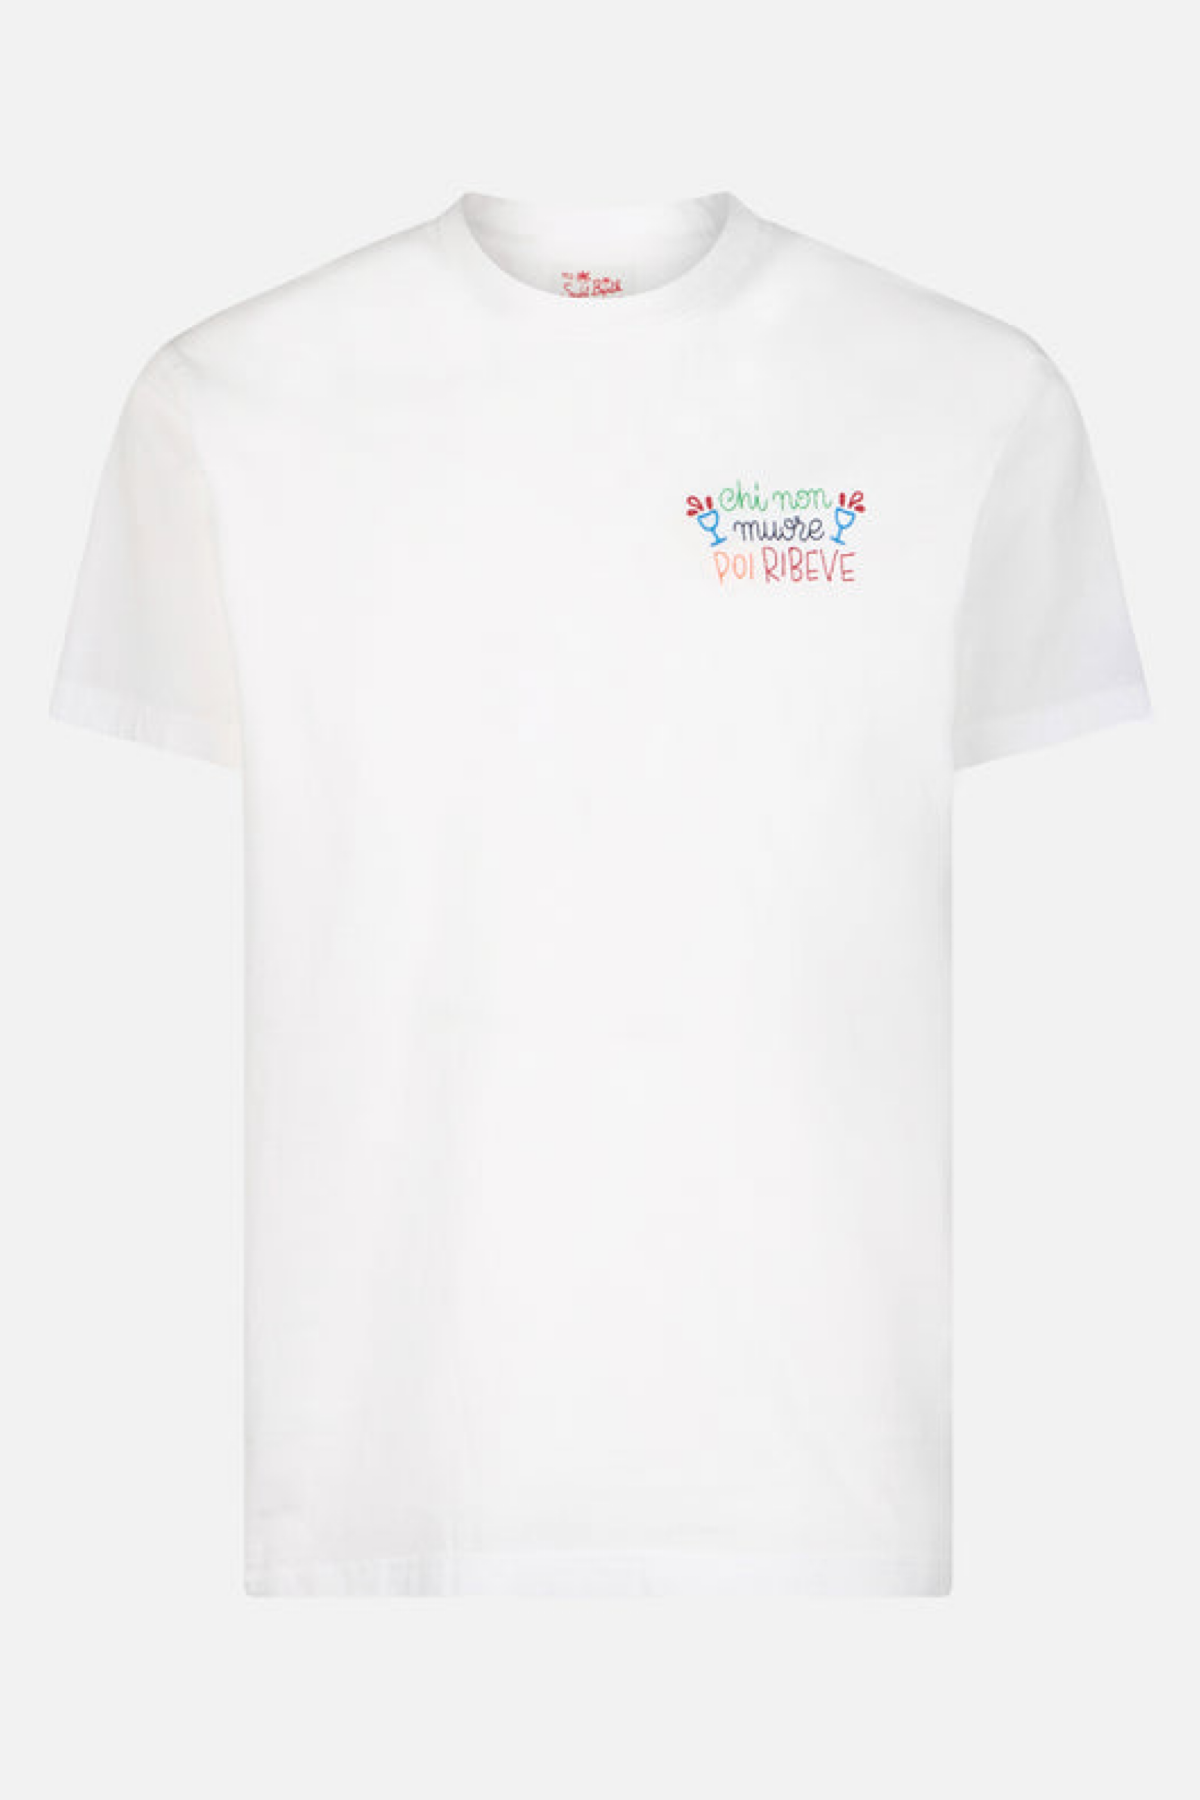 Mc2 Saint Barth t-shirt con ricamo Chi non muore poi ribeve